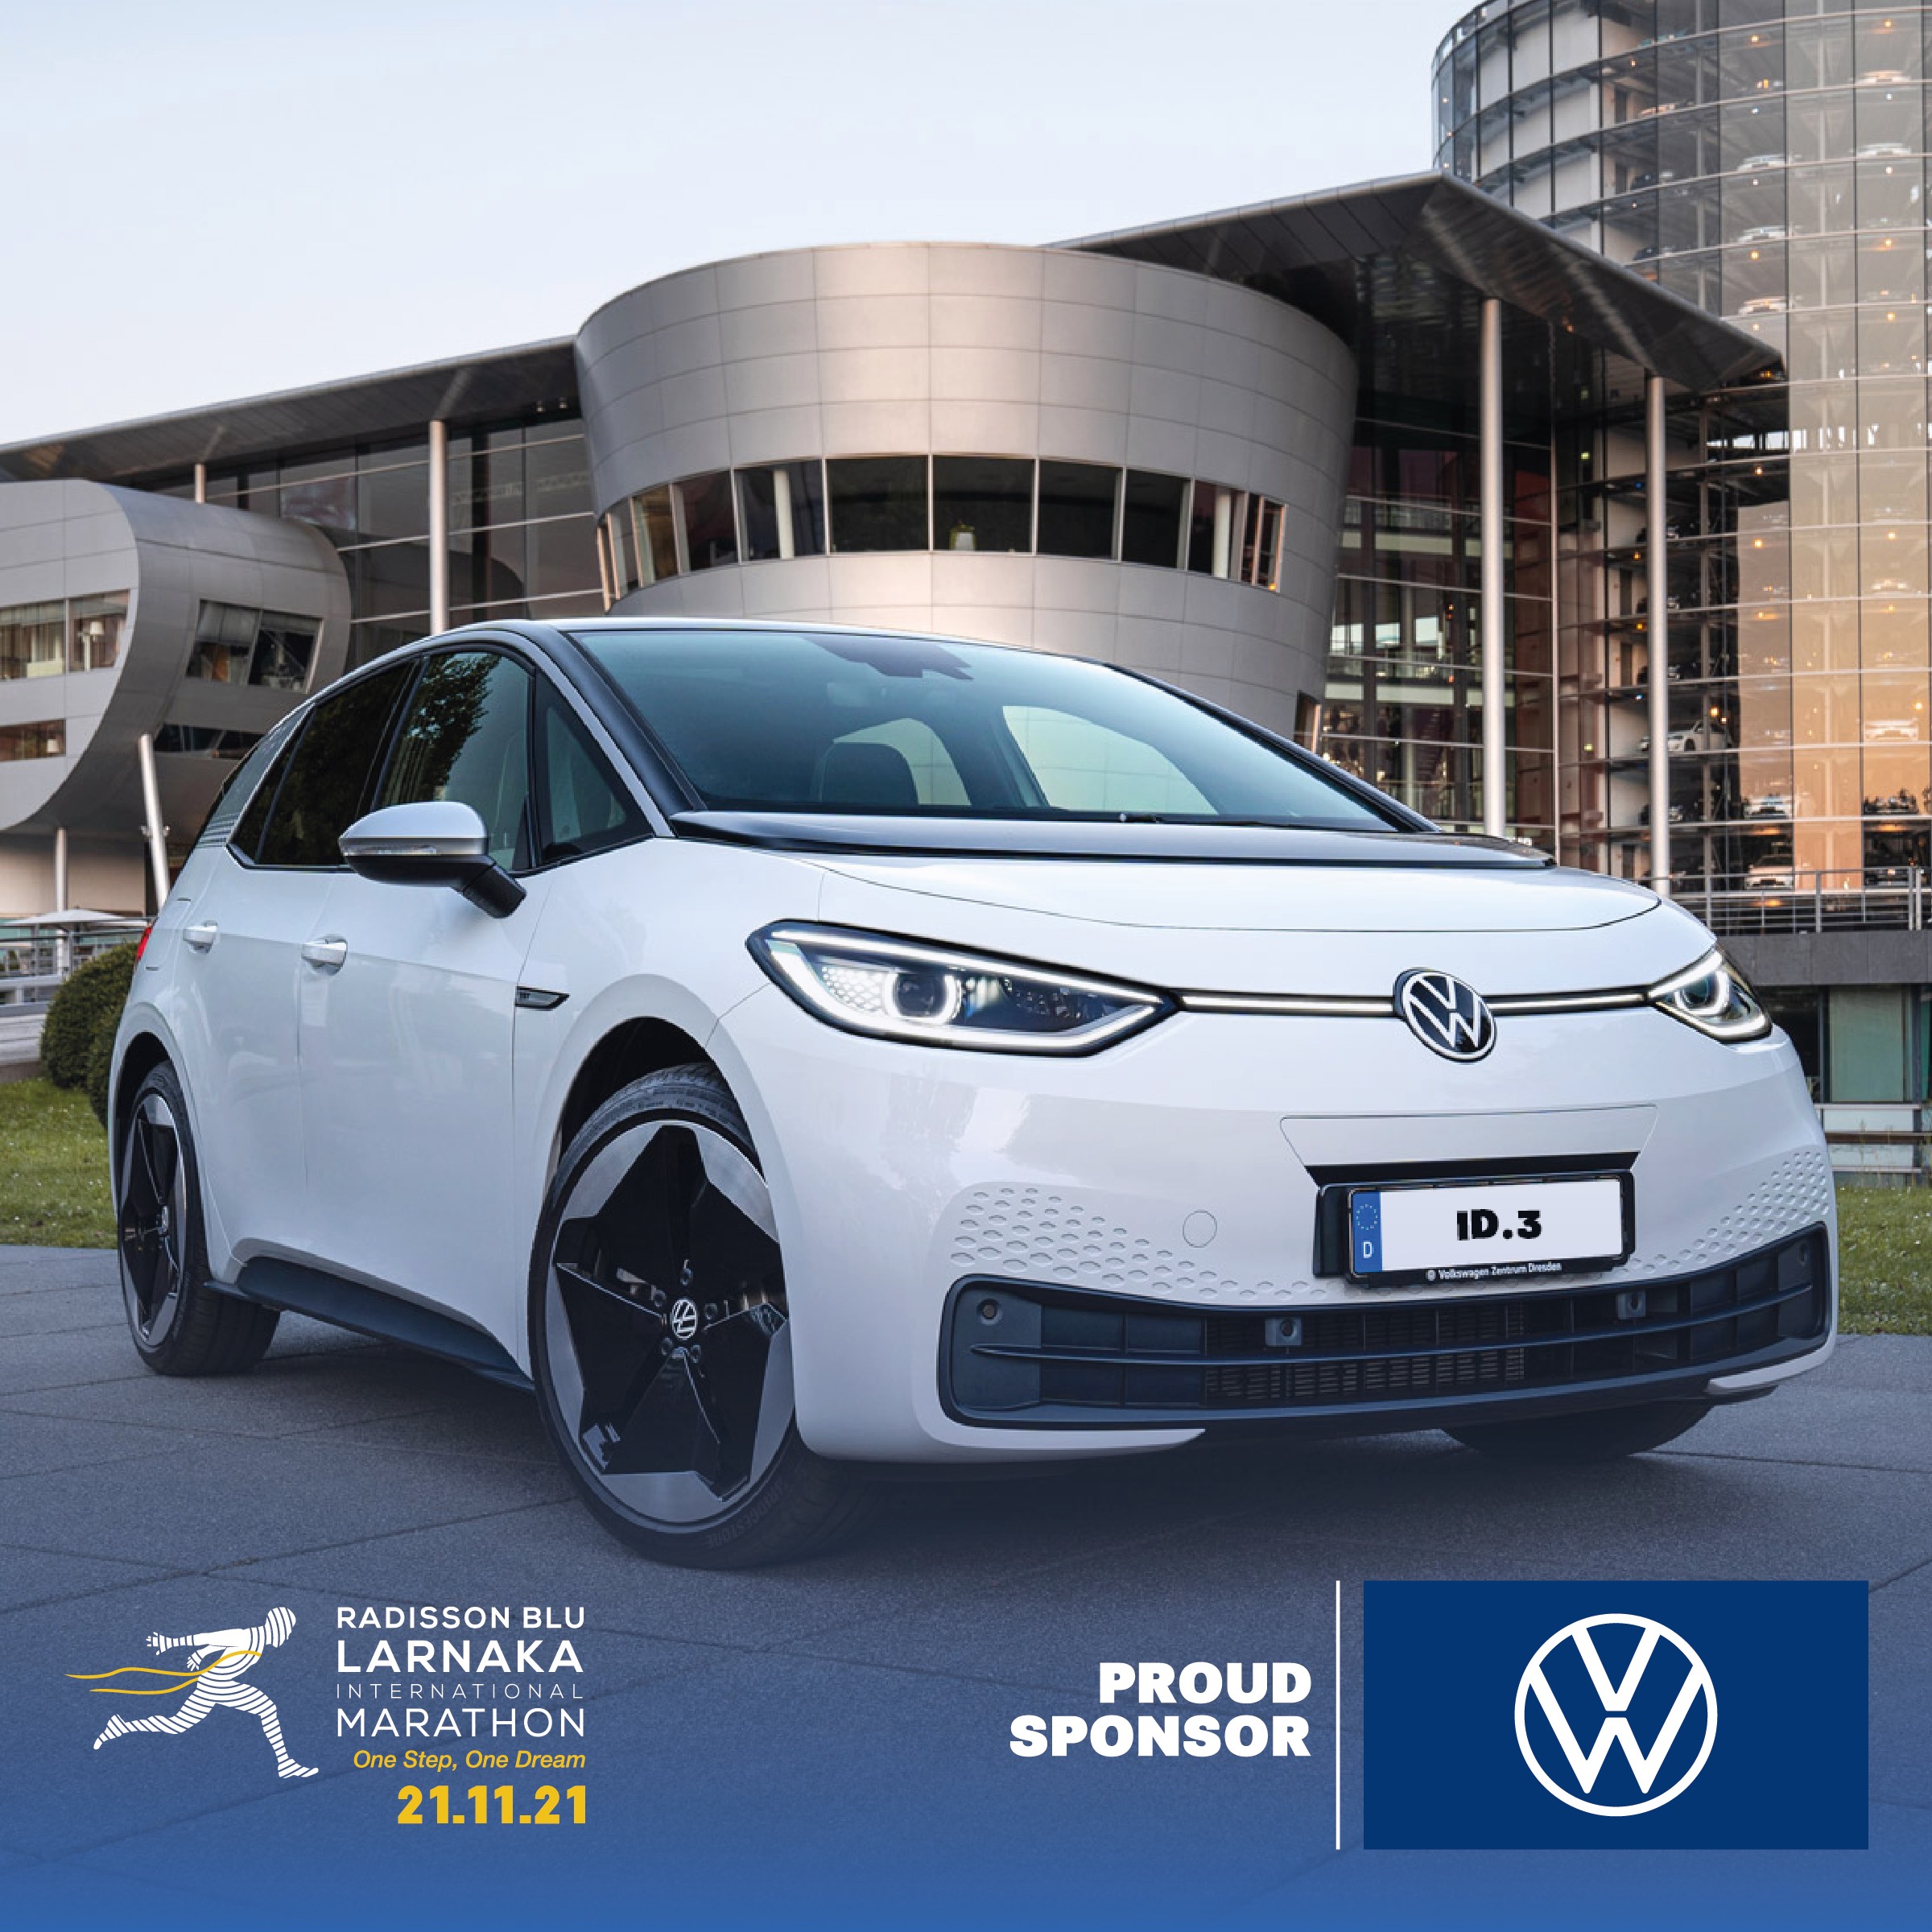 Η Volkswagen Κύπρου οδηγεί ηλεκτρικά τον 4ο Radisson Blu Διεθνή Μαραθώνιο Λάρνακας